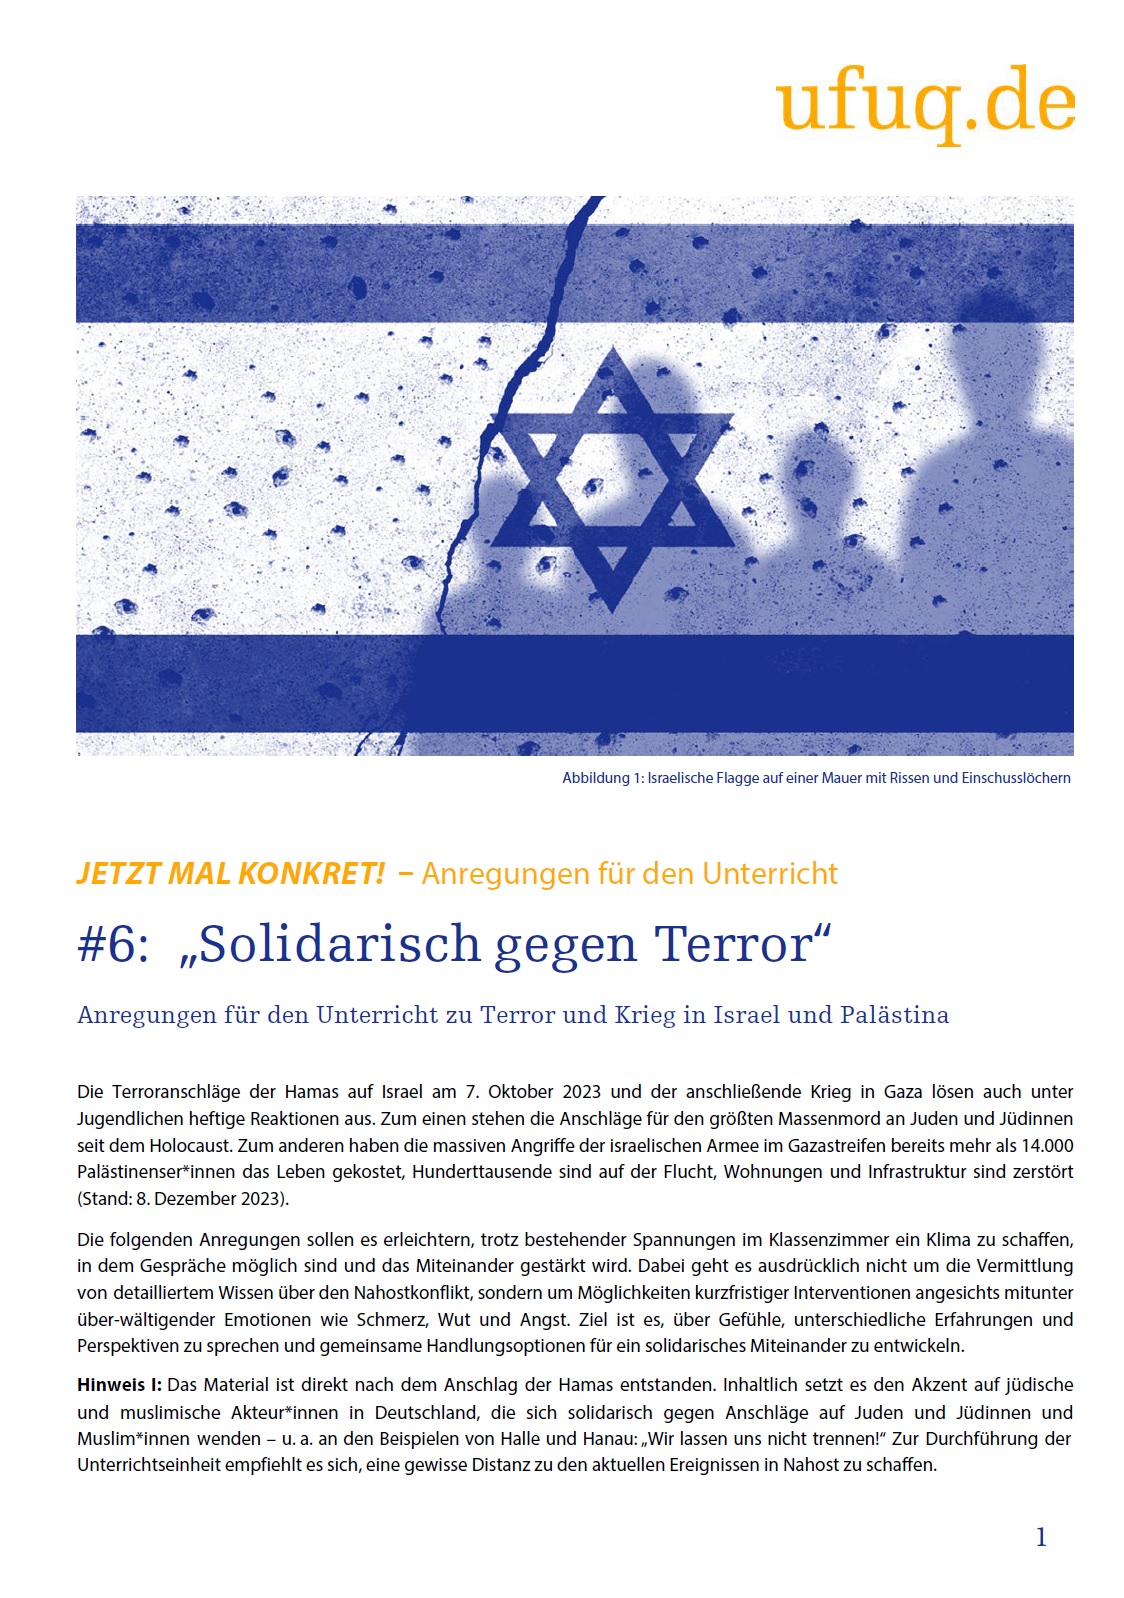 Im oberen Drittel des Bildes ist die Flagge Israels abgebildet, die übersät ist mit Kugeln. Darunter steht Solidarisch gegen Terror.